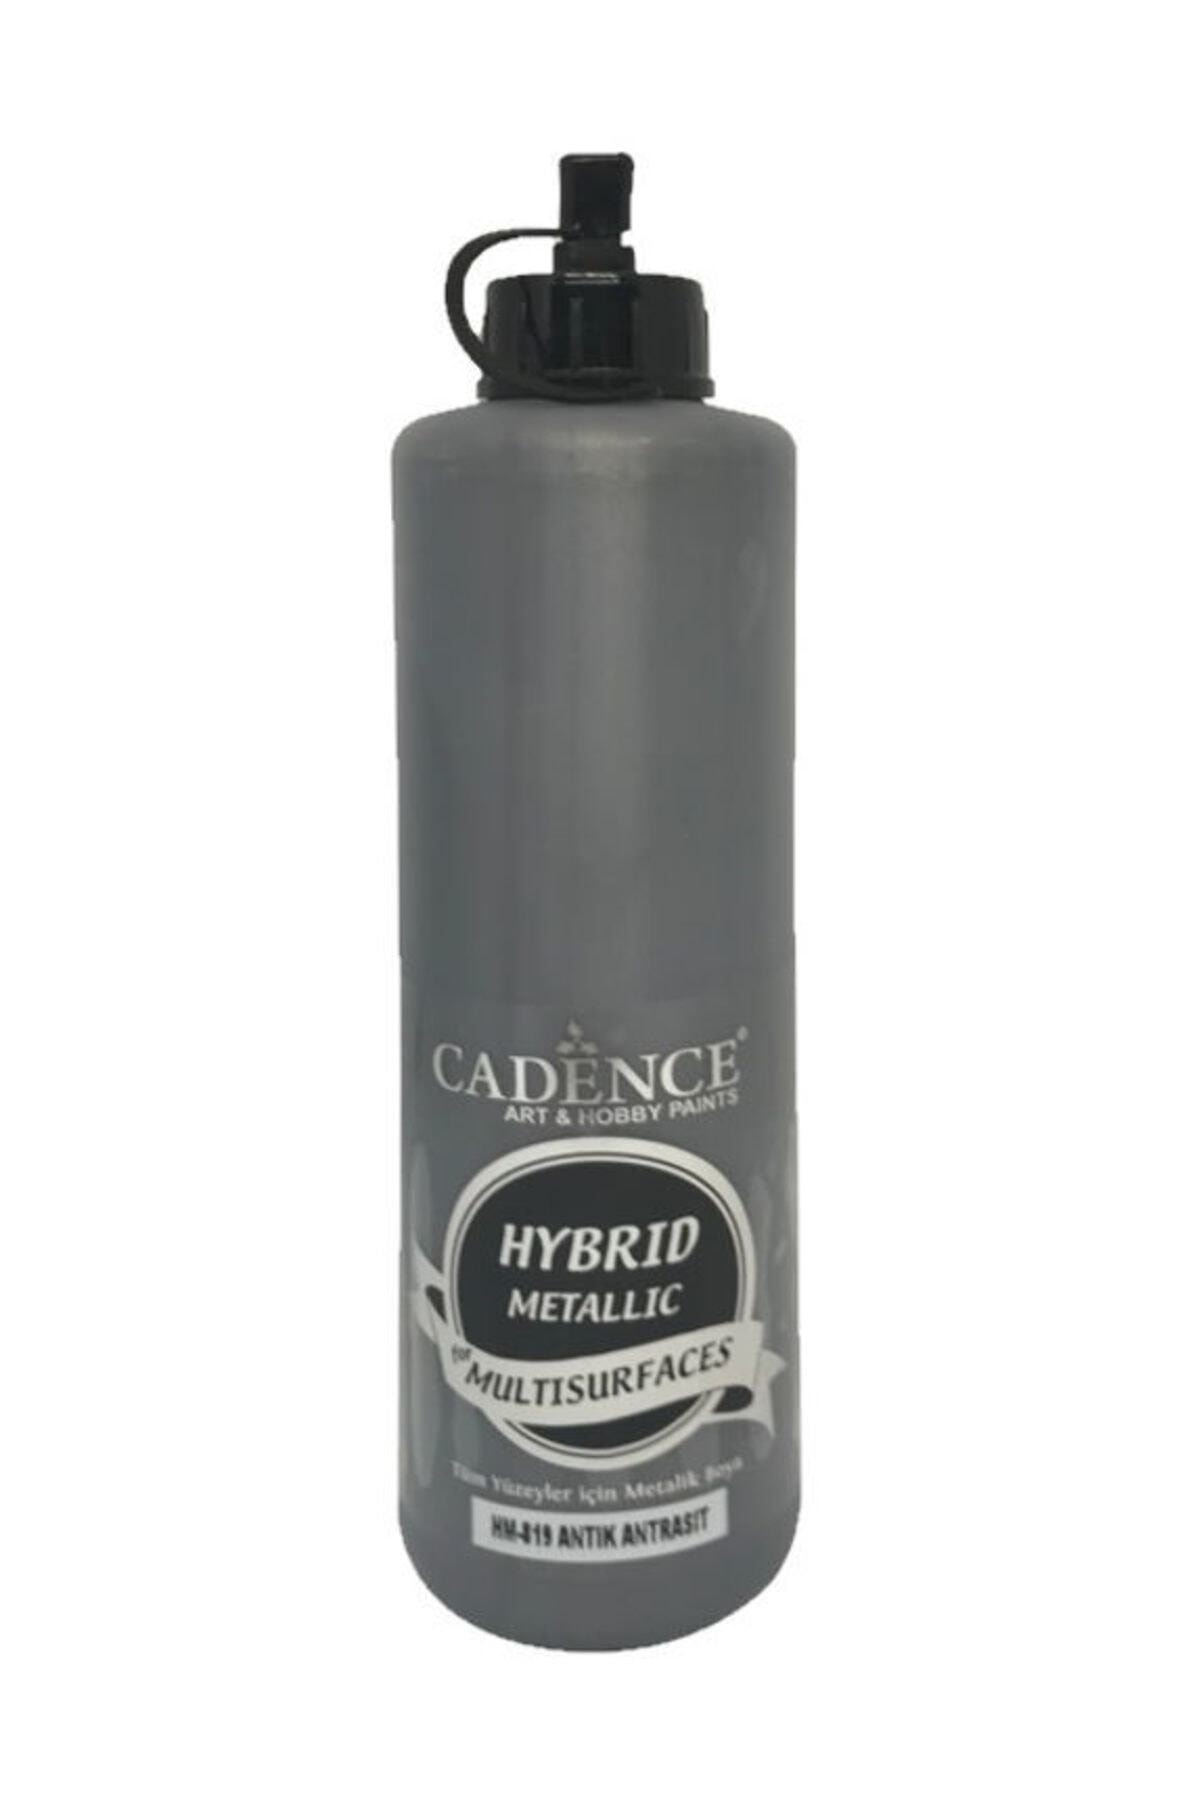 Cadence Hybrid Multisurface Metalik Boya 500 ml. HM-819 ANTİK ANTRASİT